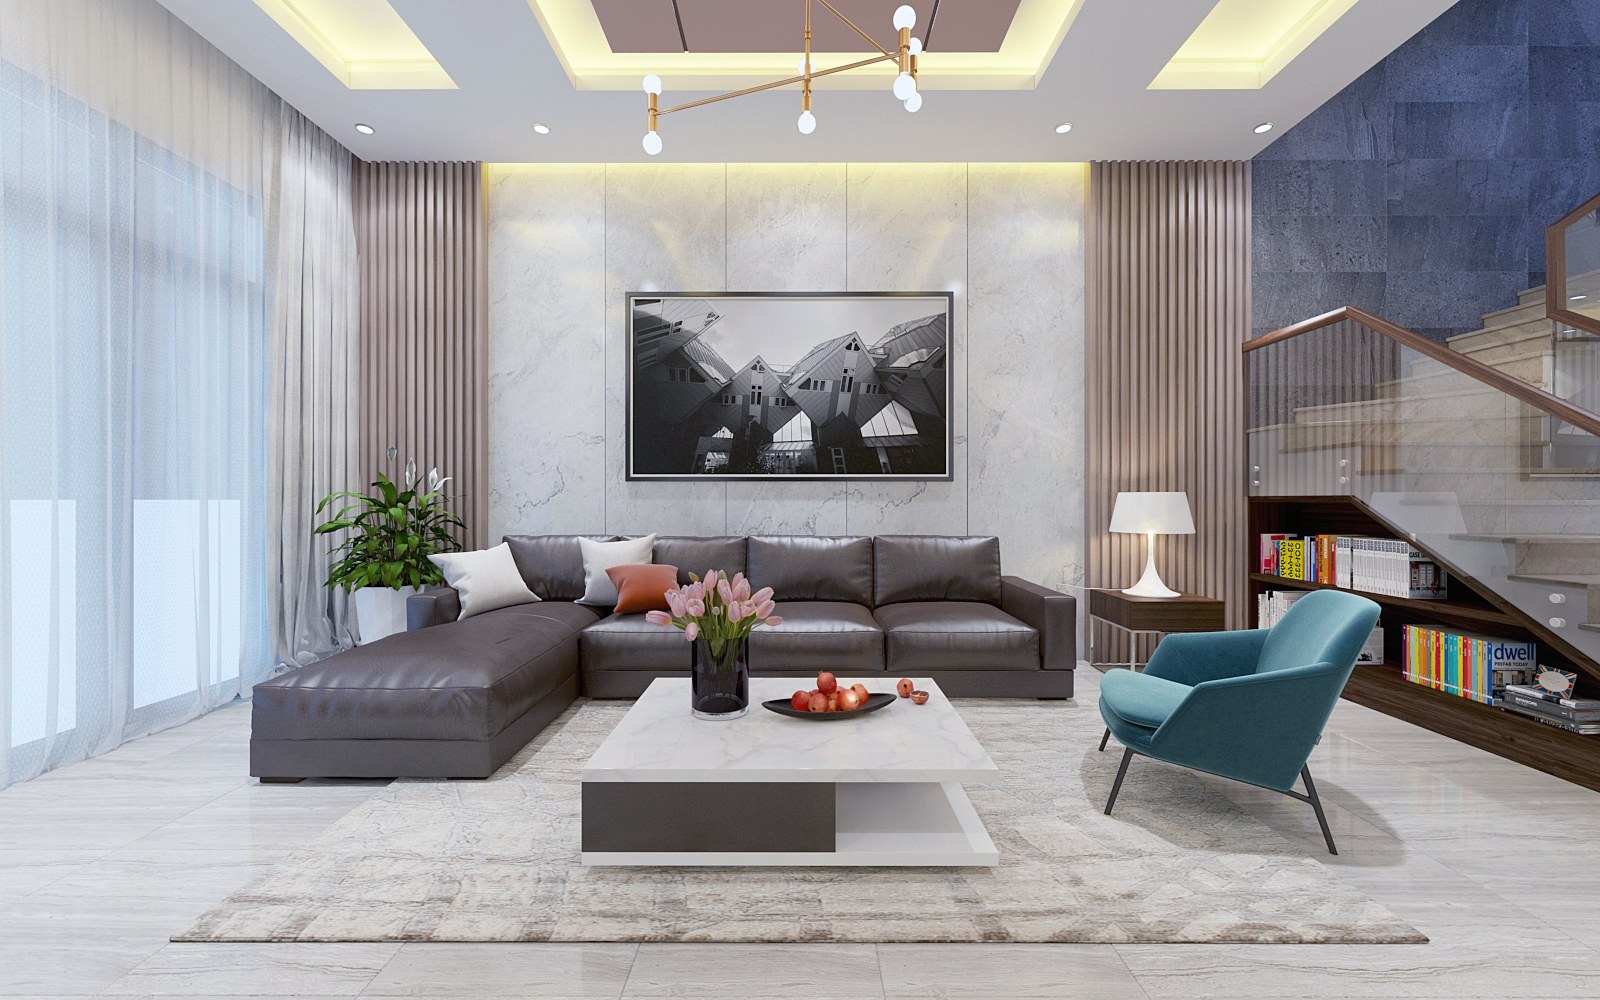 Mời bạn xem qua hình ảnh nội thất phòng khách đẹp lung linh, sáng tạo và hoàn hảo từng chi tiết.